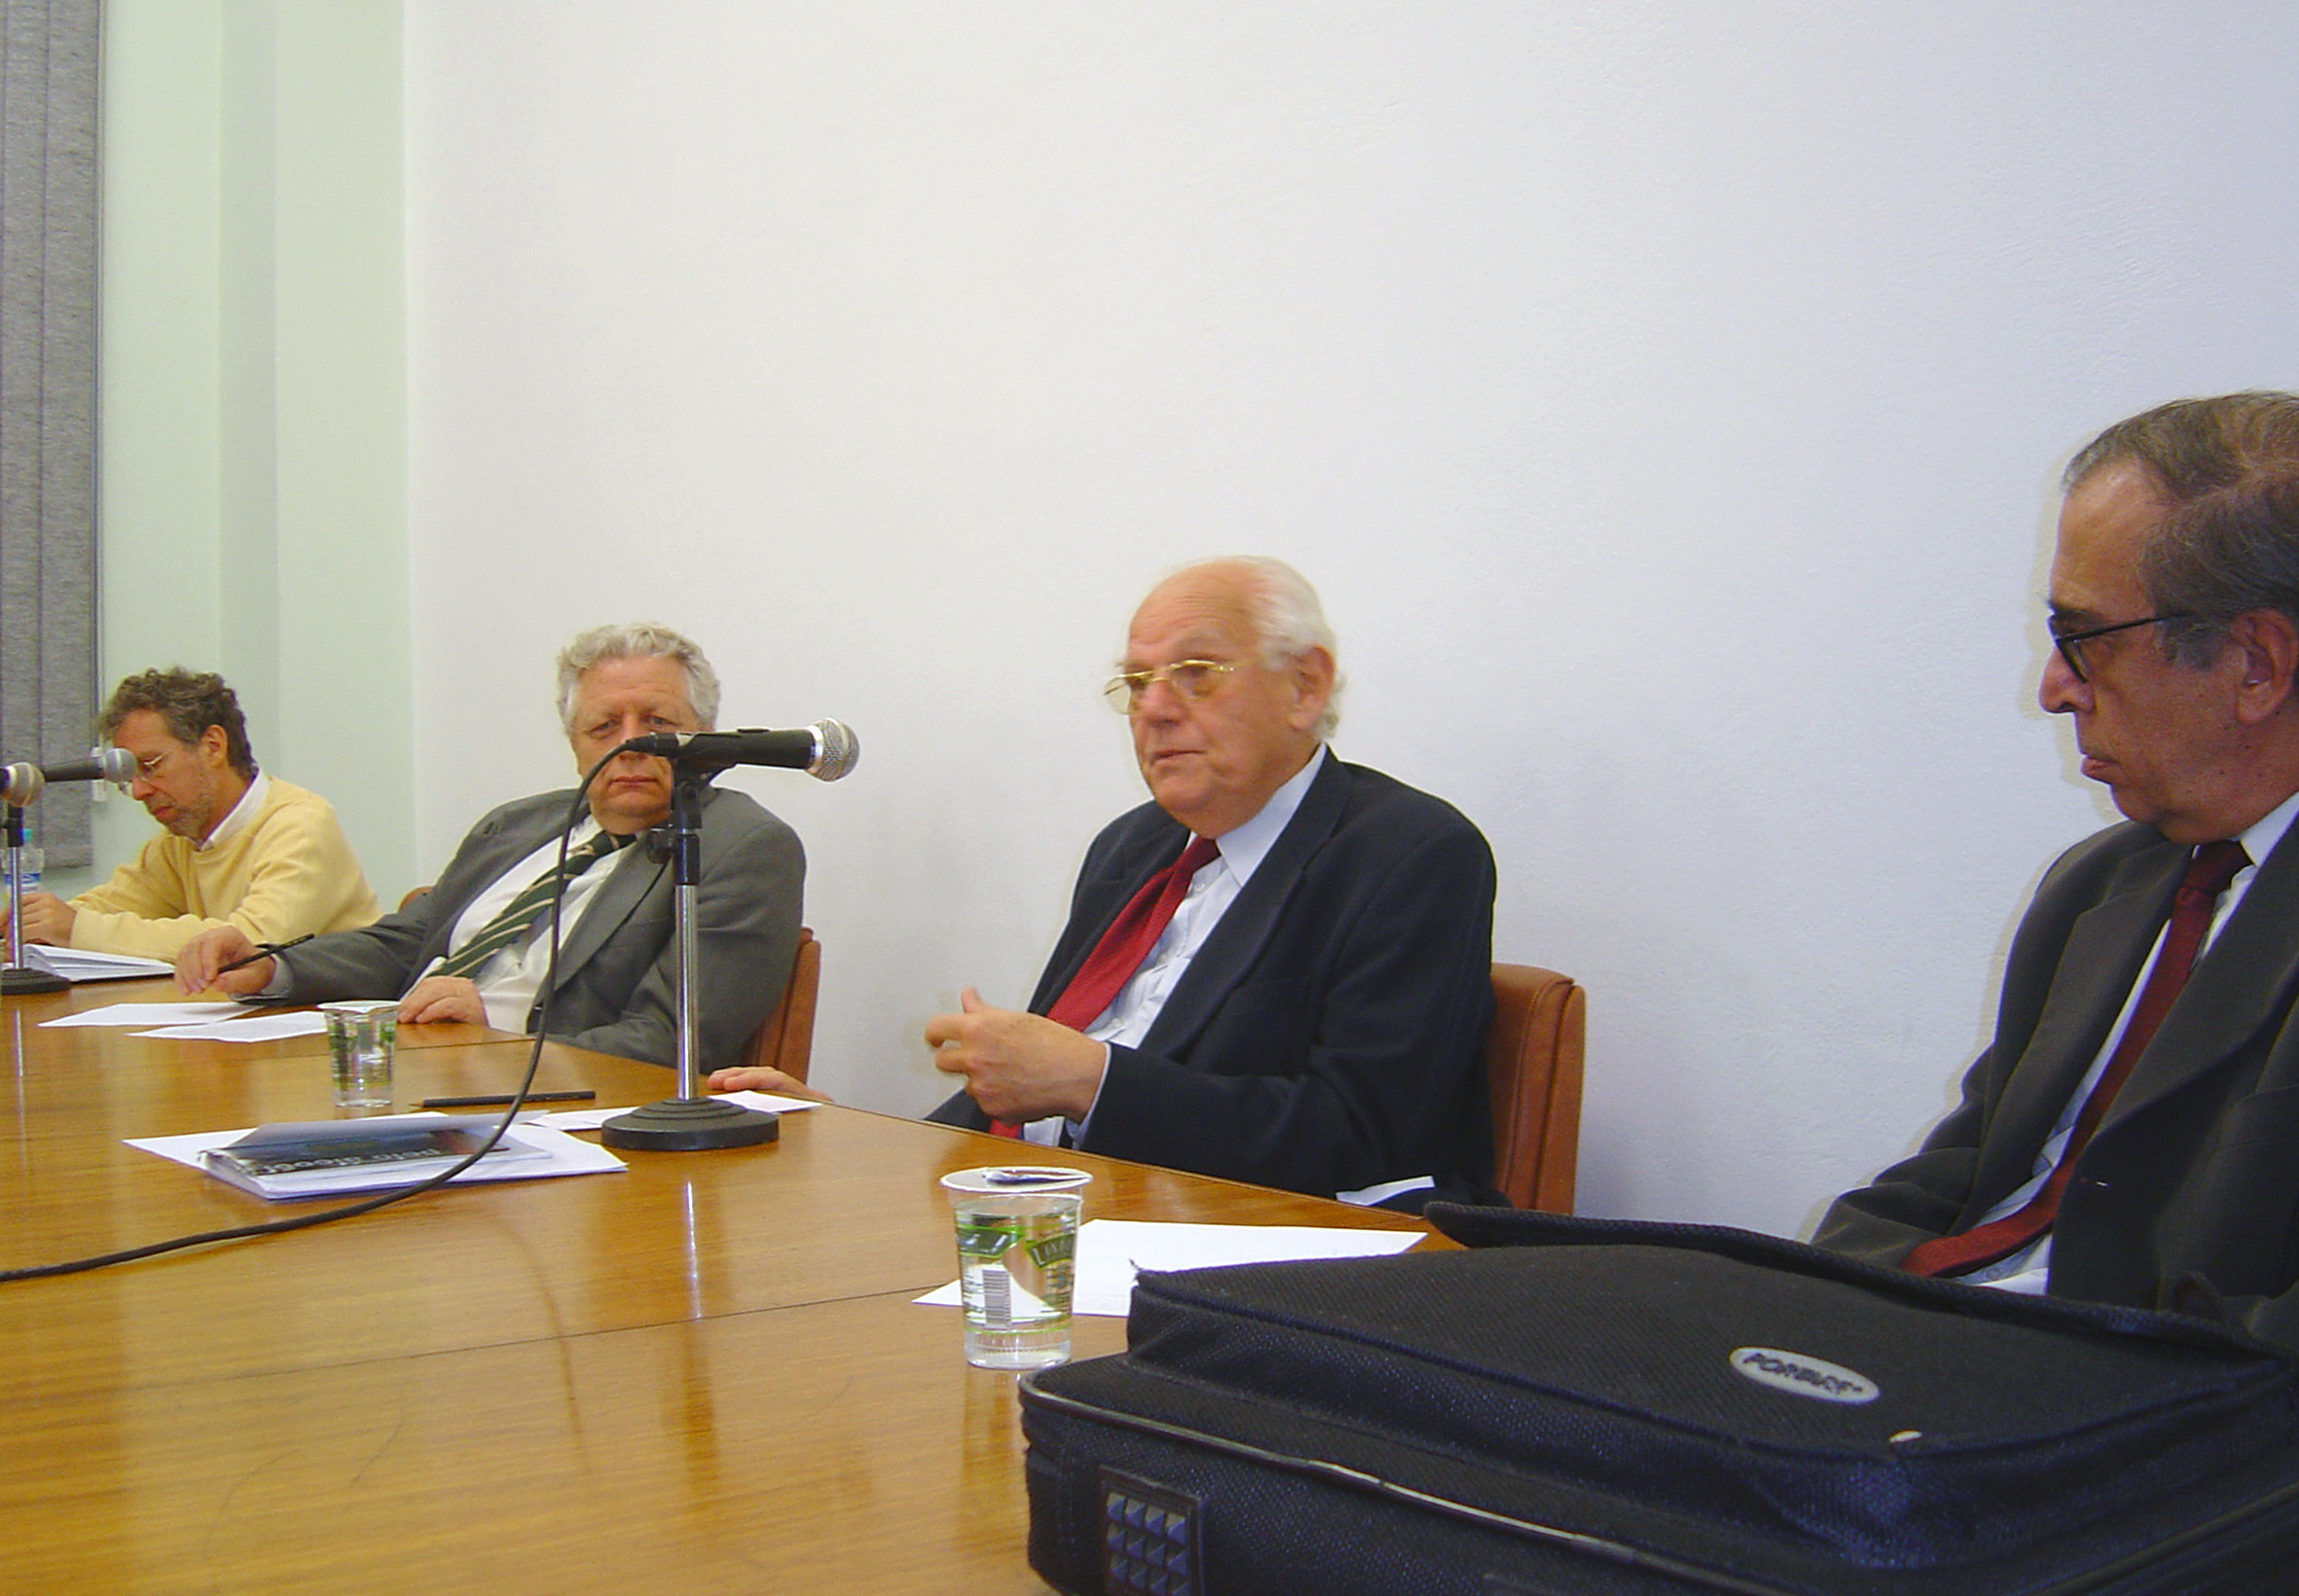 Ricardo Abramovay, João Steiner, Ignacy Sachs e Luiz Gylvan Meira Filho